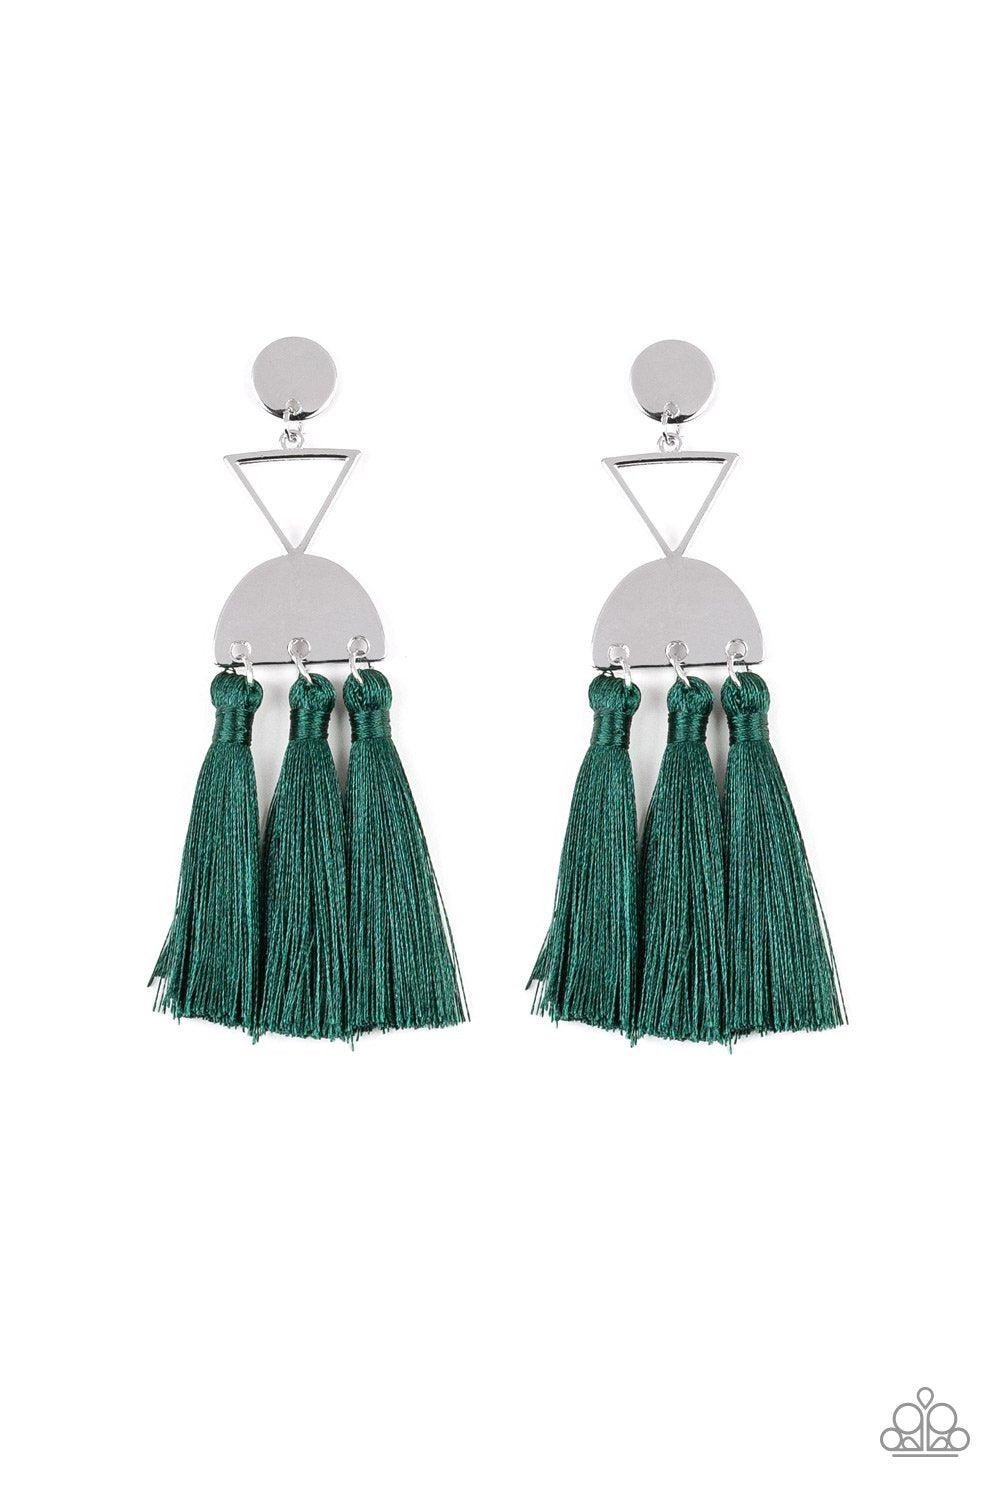 Tassel Trippin - Dark Green Tassel Post Earrings - Paparazzi Accessories-CarasShop.com - $5 Jewelry by Cara Jewels